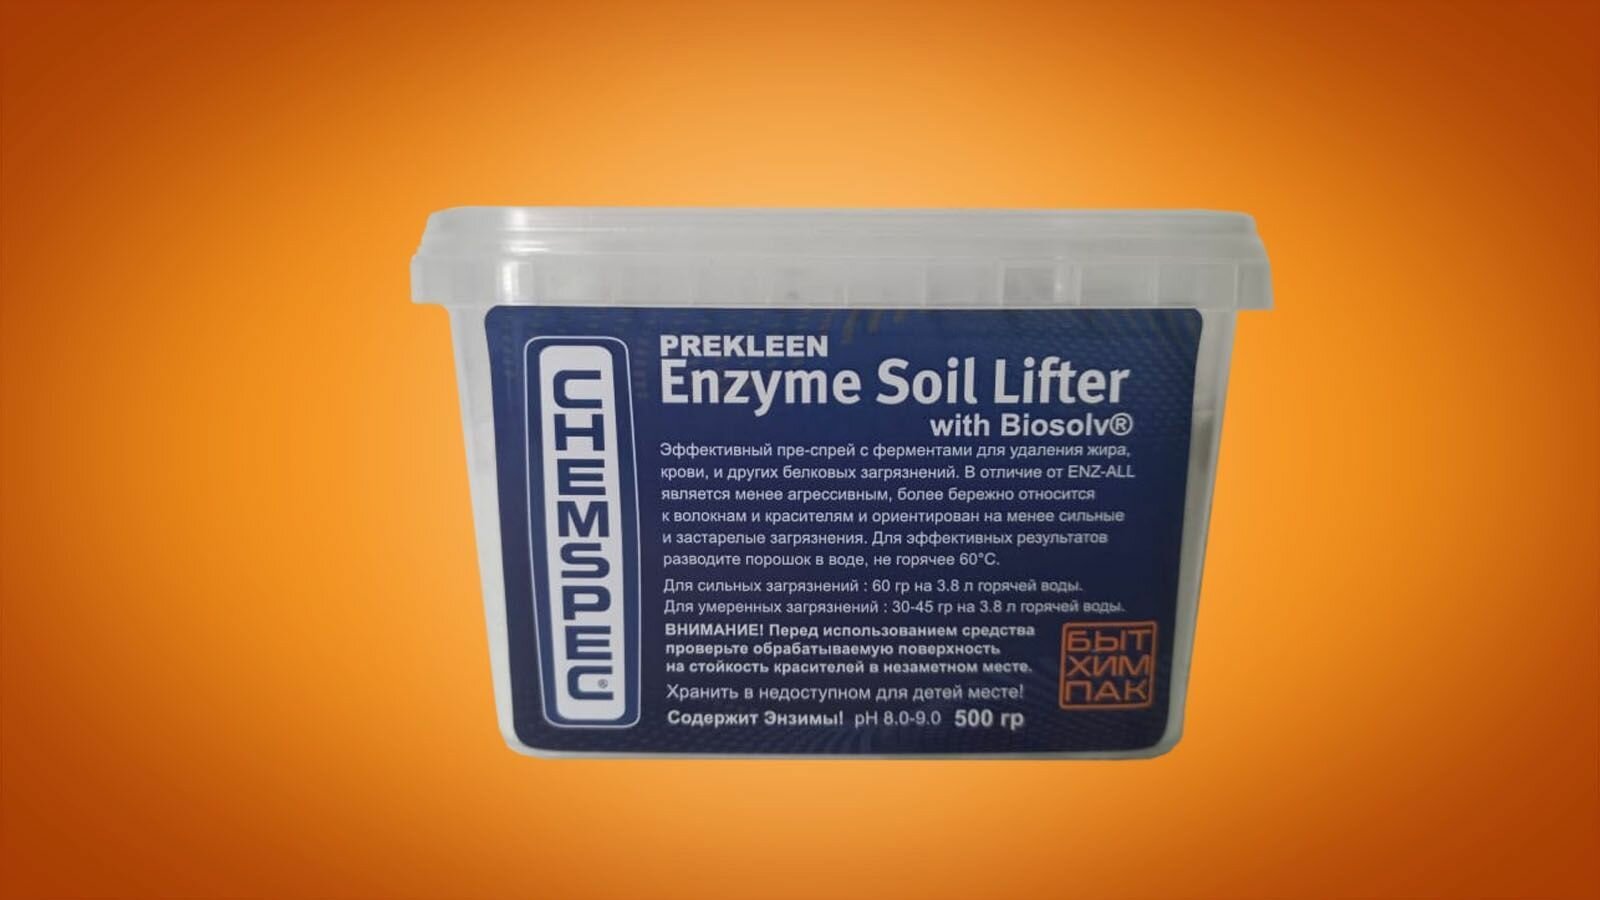 Chemspec PreKleen Enzyme Soil Lifter with Biosolv - Пре-спрей с ферментами для эффективного удаления жира крови и др. органических загрязнений 05 кг